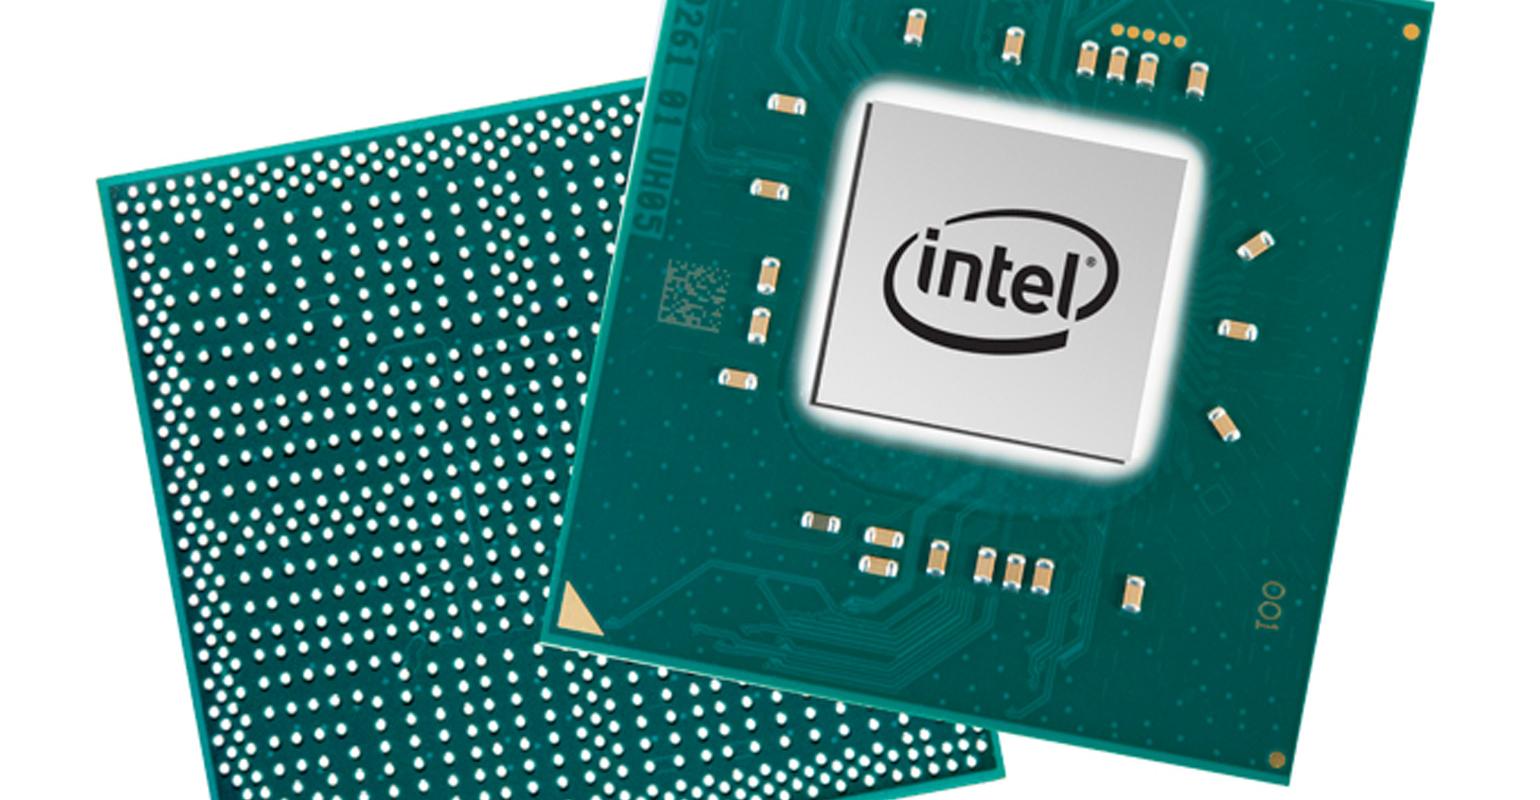 Заменить интел. Сопроцессорные чипы Интел 8231. Микропроцессор Pentium. Pentium 6405u. Процессор Intel Pentium 2.